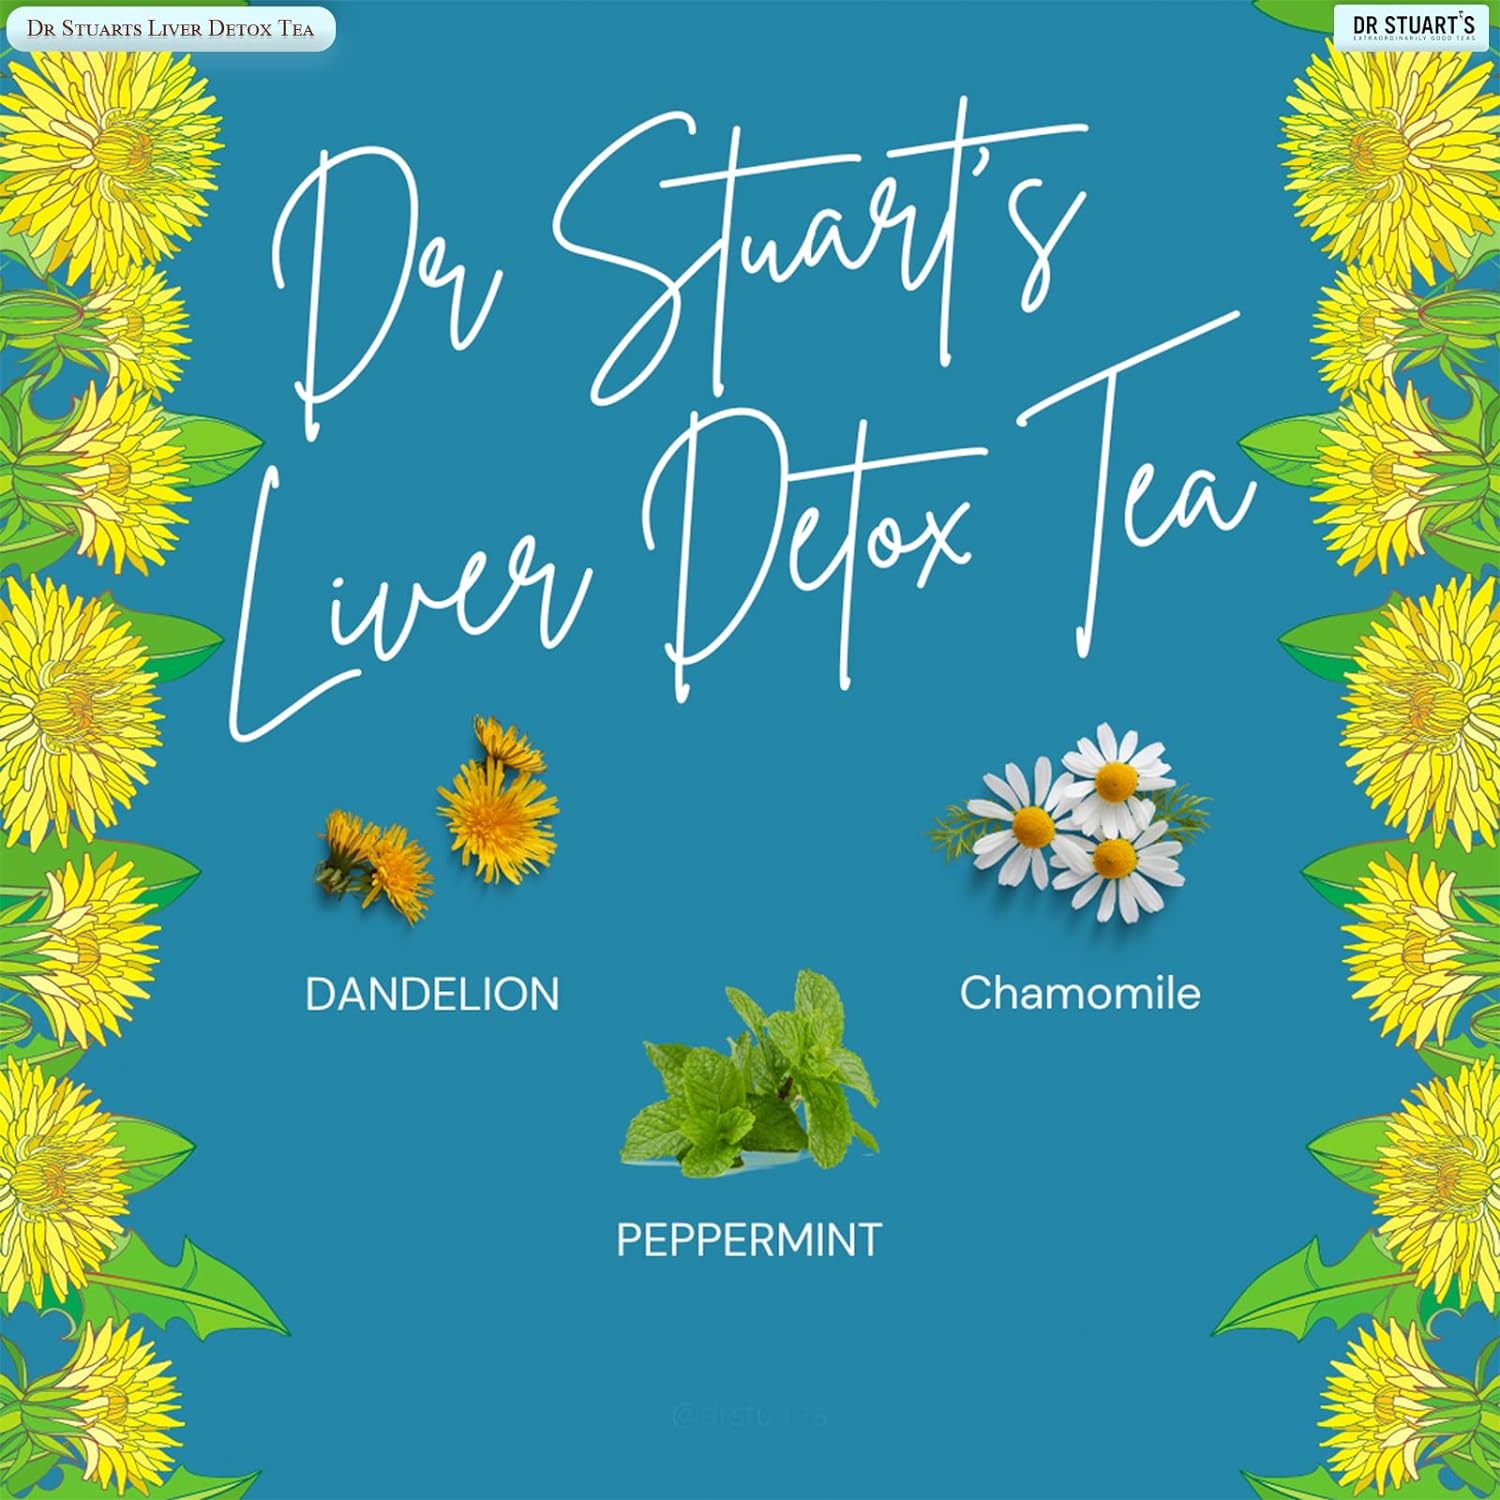 Liver Detox Tea 15bags